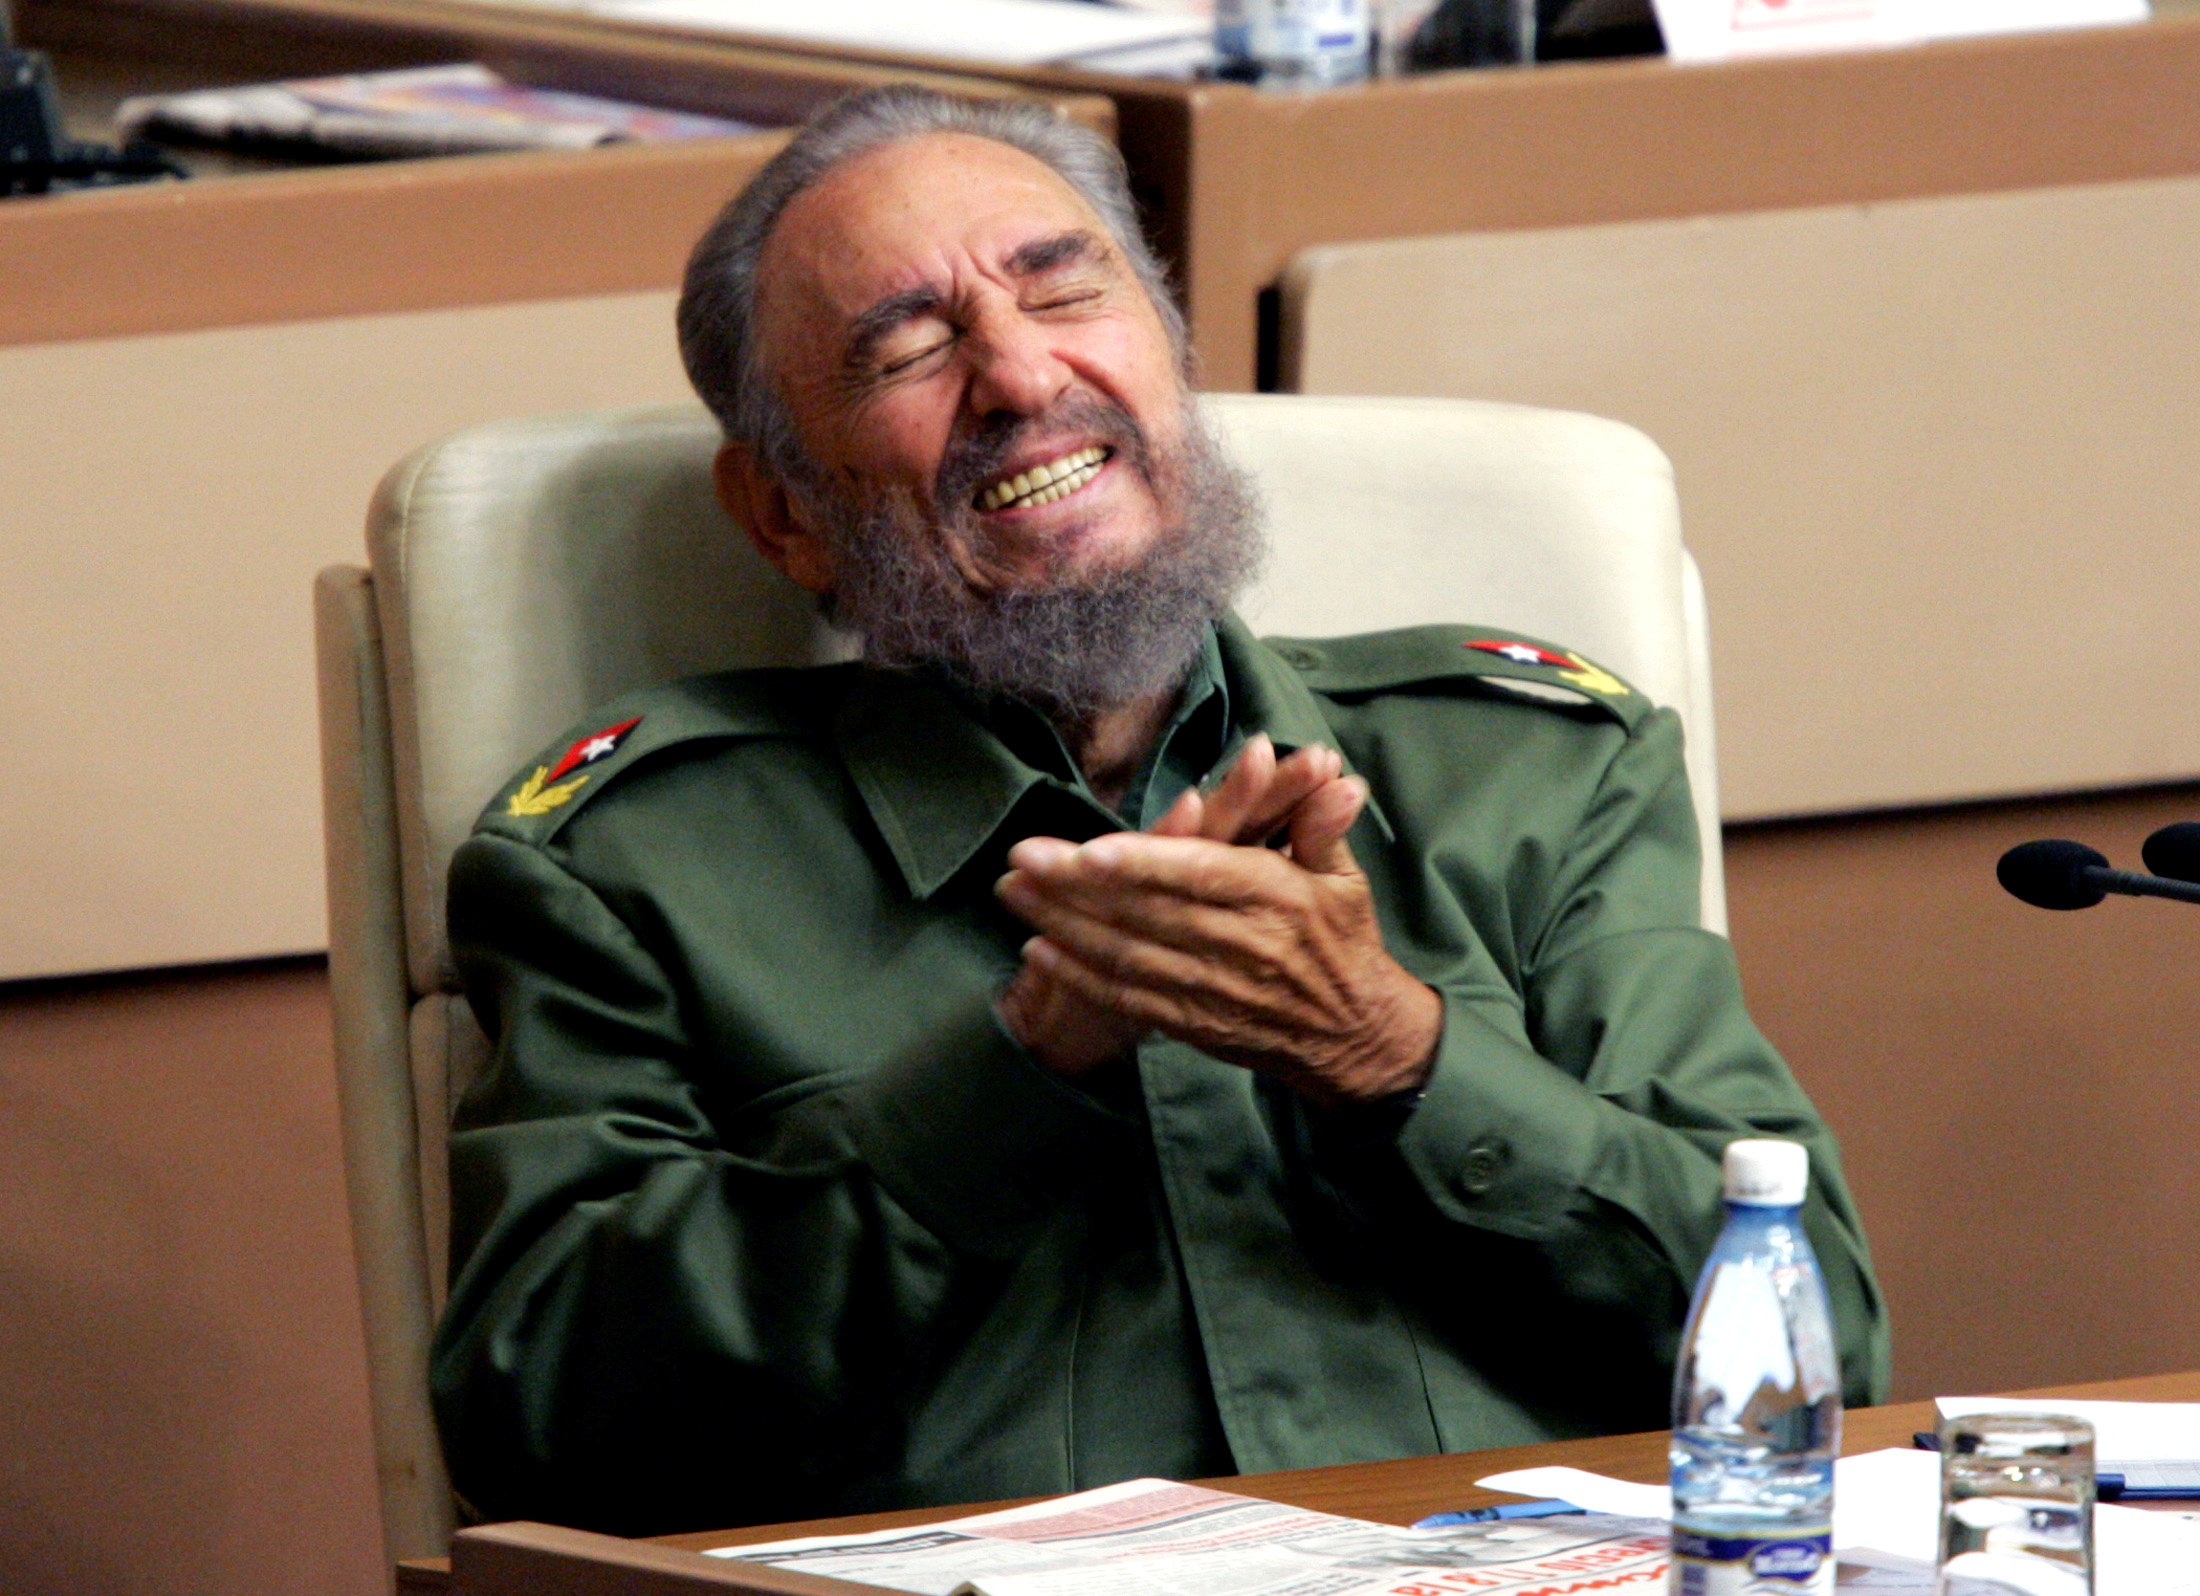 El líder histórico de la Revolución cubana falleció el 25 de noviembre a los 90 años.